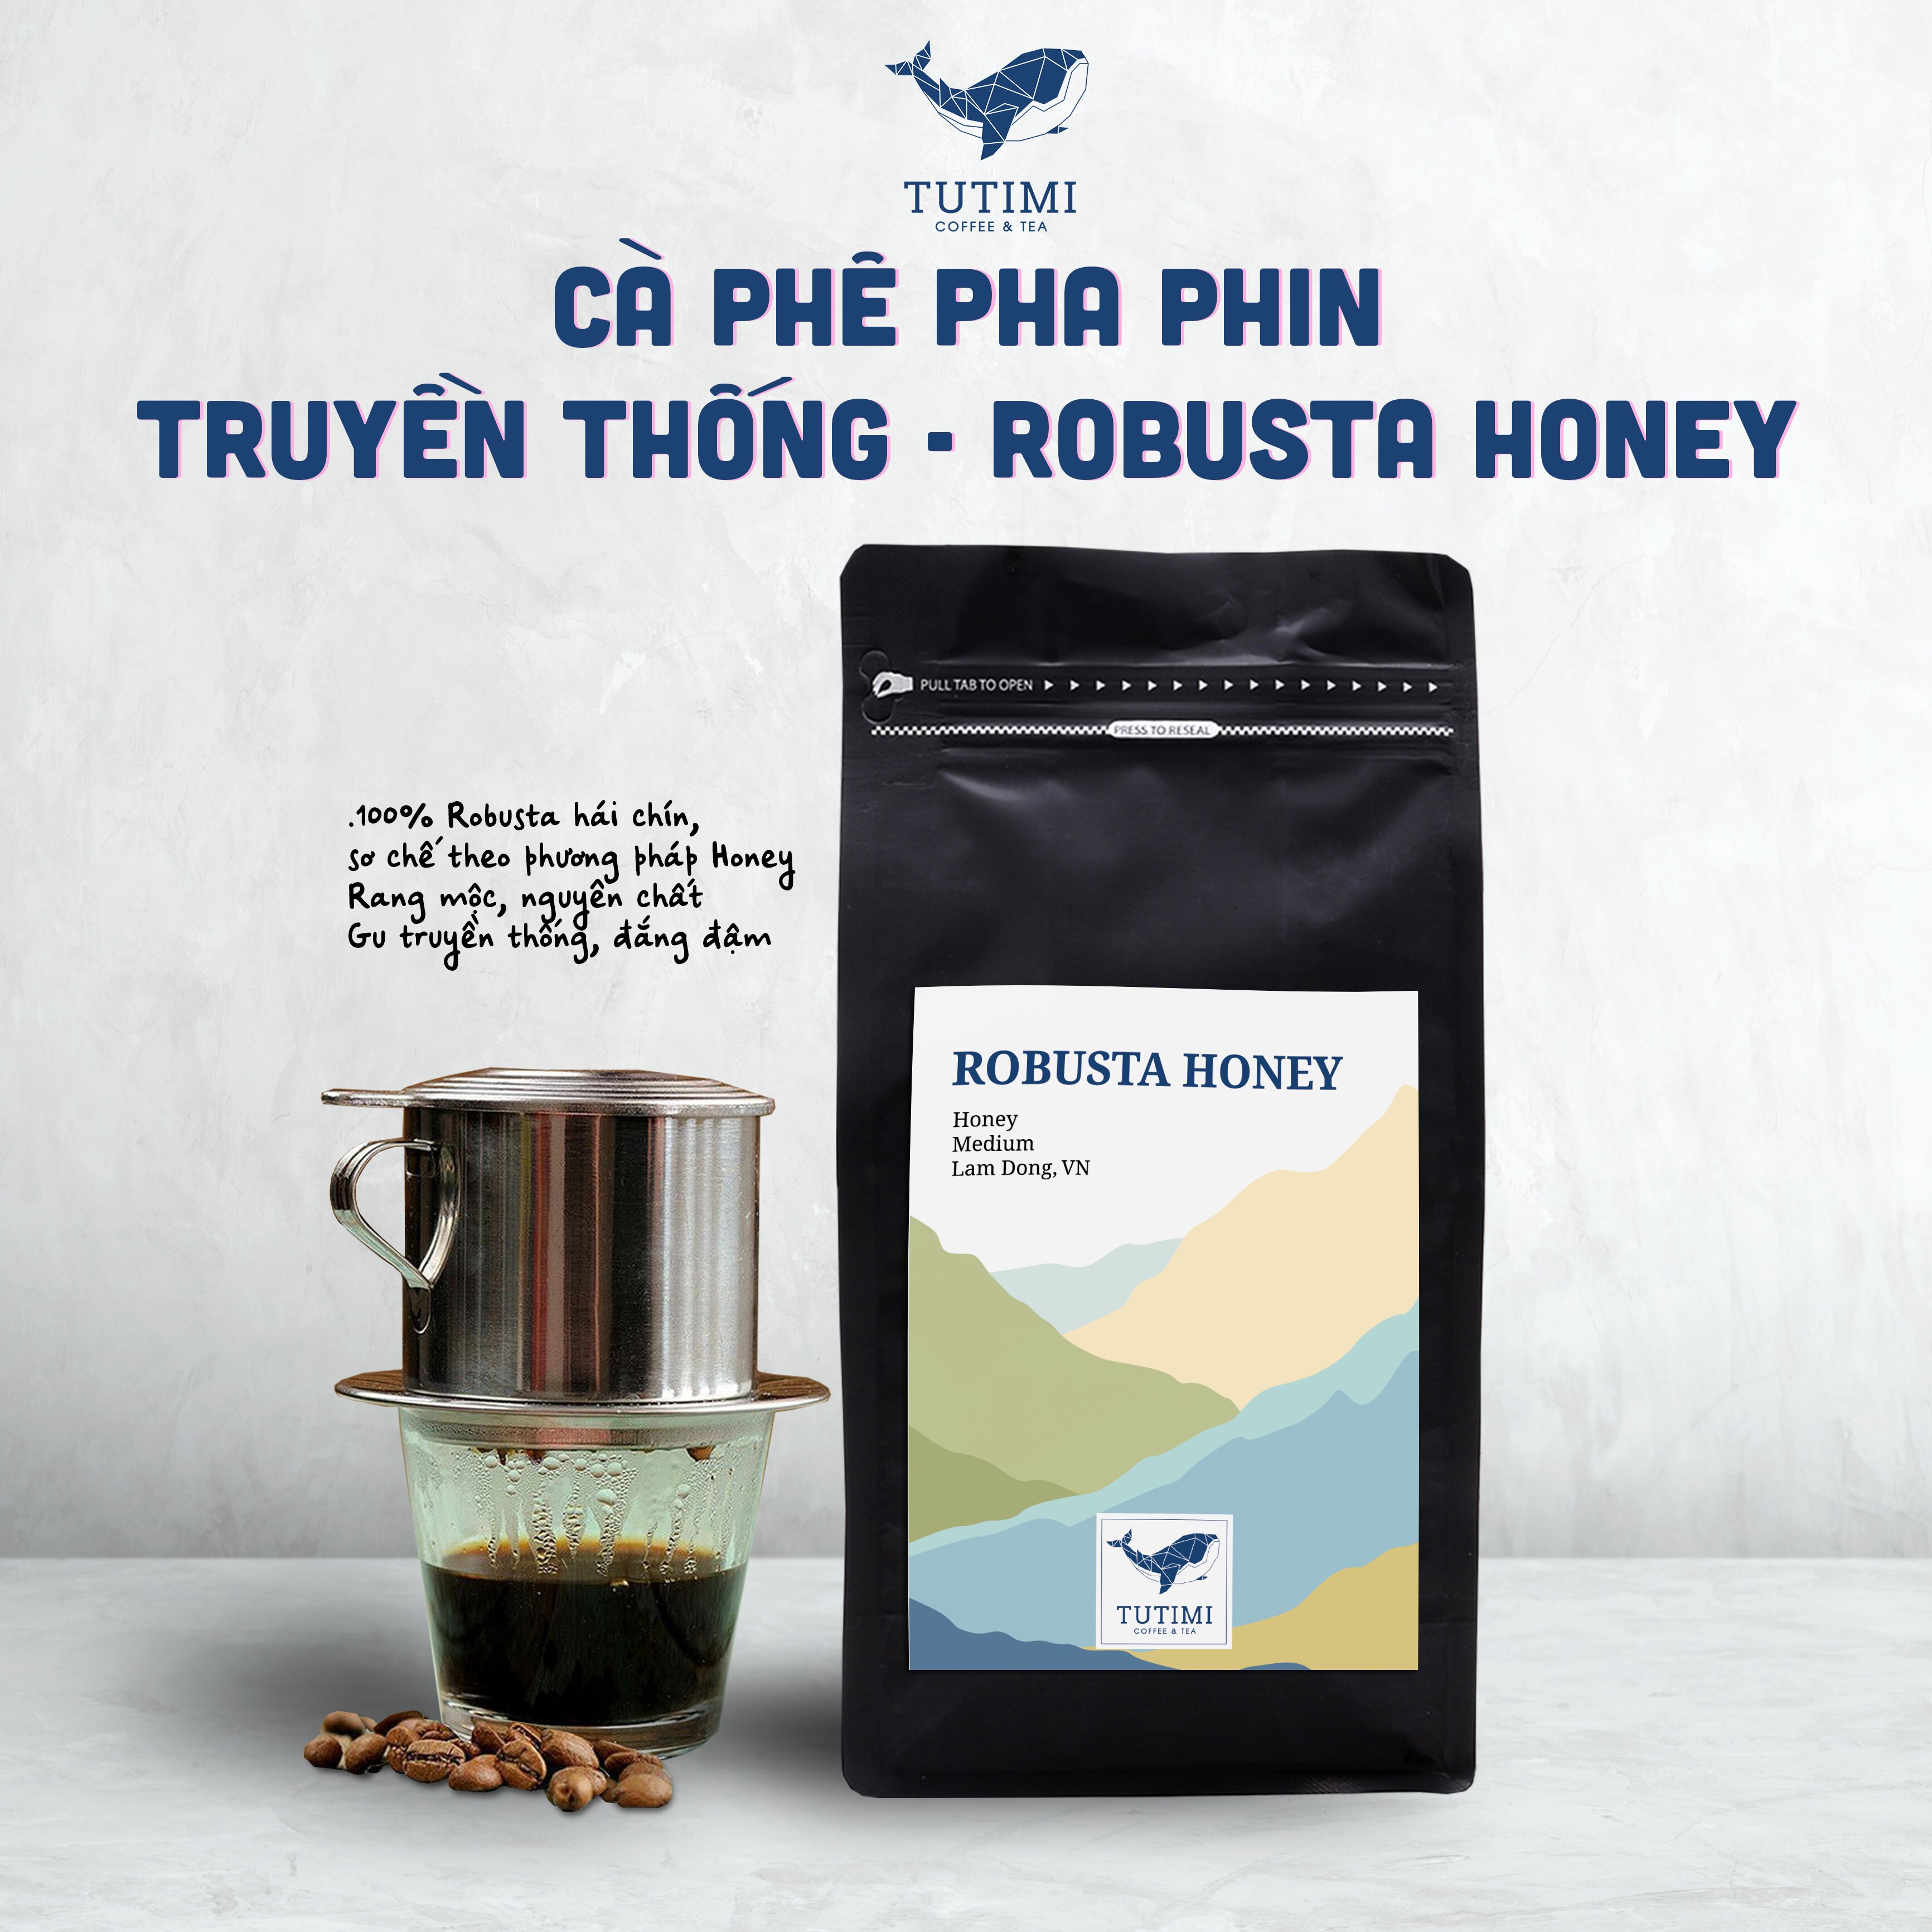 Cà phê nguyên chất Robusta Honey rang mộc vị đắng đầm hậu ngọt thơm nồng